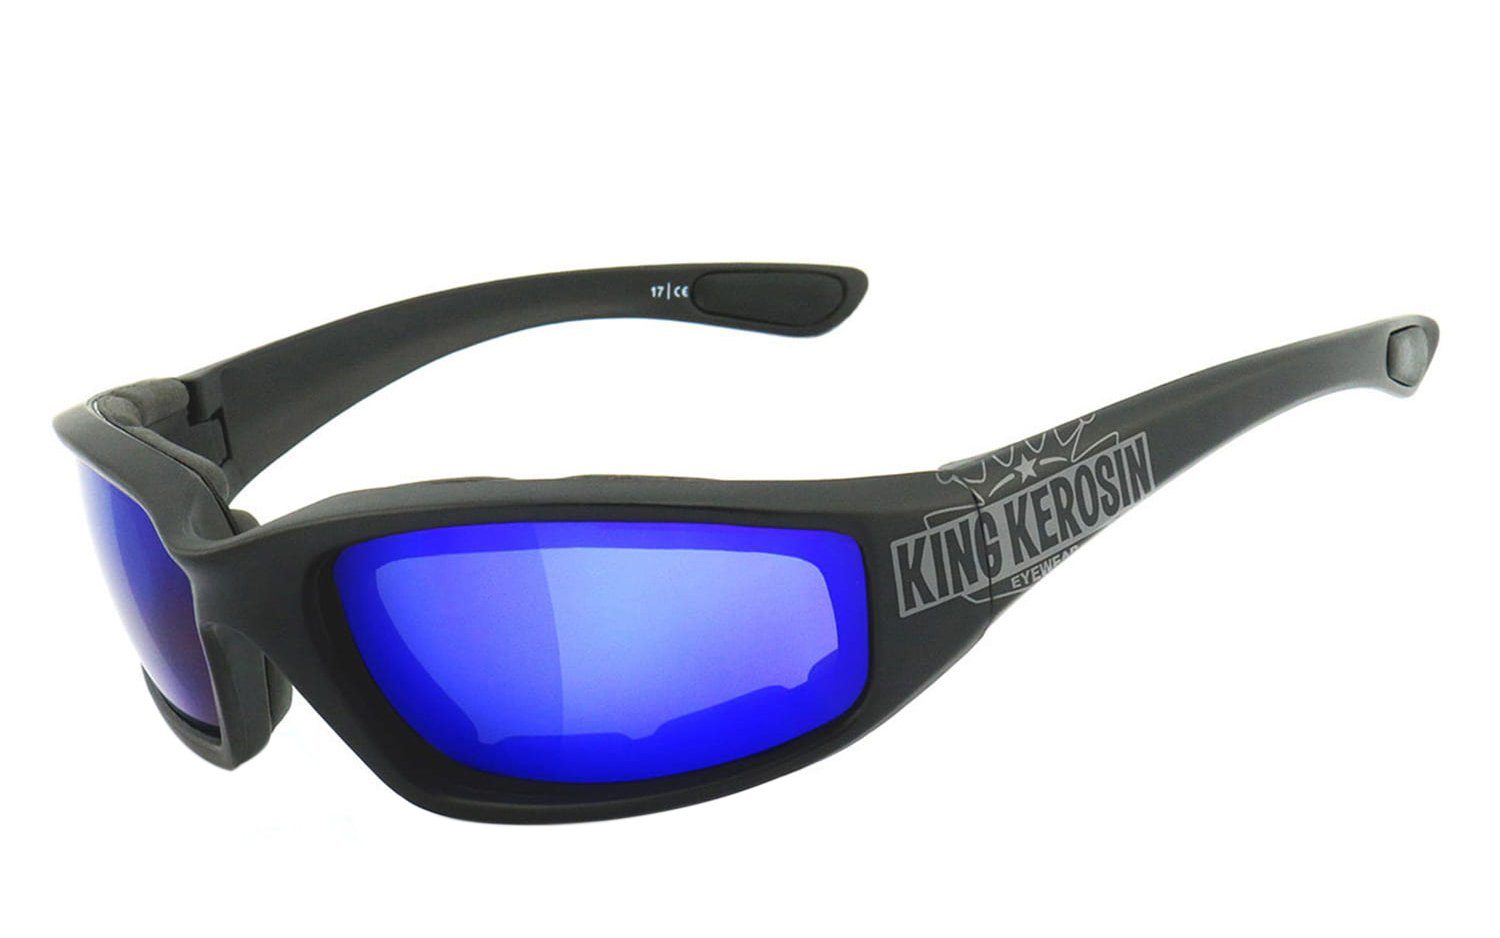 Motorradbrille durch Kunststoff-Sicherheitsglas Steinschlagbeständig KK140 gepolstert, KingKerosin